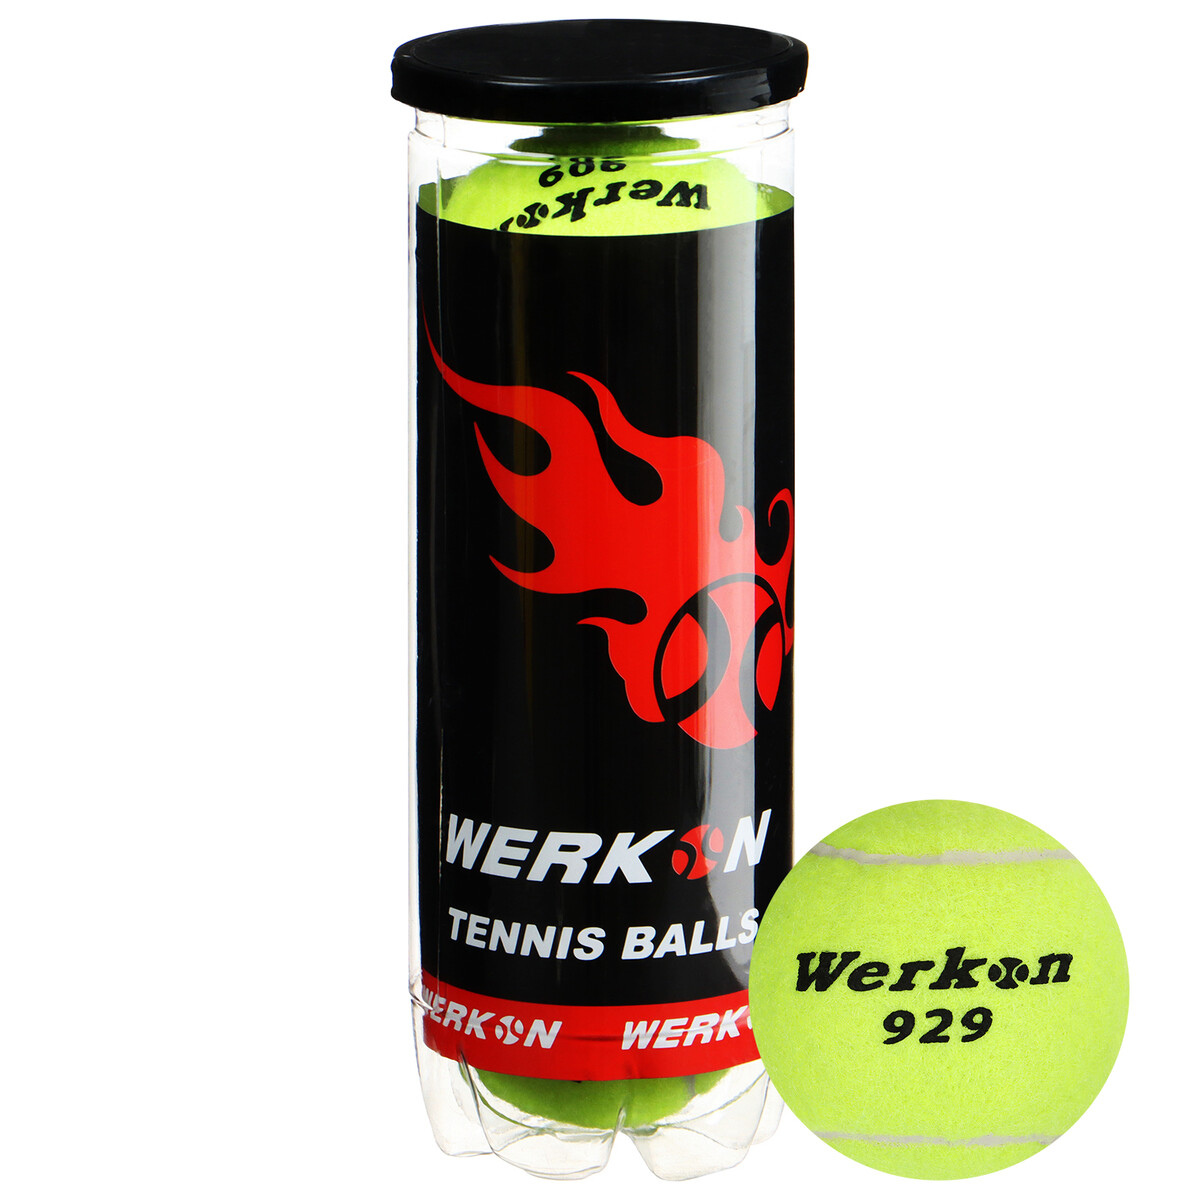 Набор мячей для большого тенниса werkon 929 в тубе, 3 шт. набор мячей для большого тенниса werkon 929 в тубе 3 шт